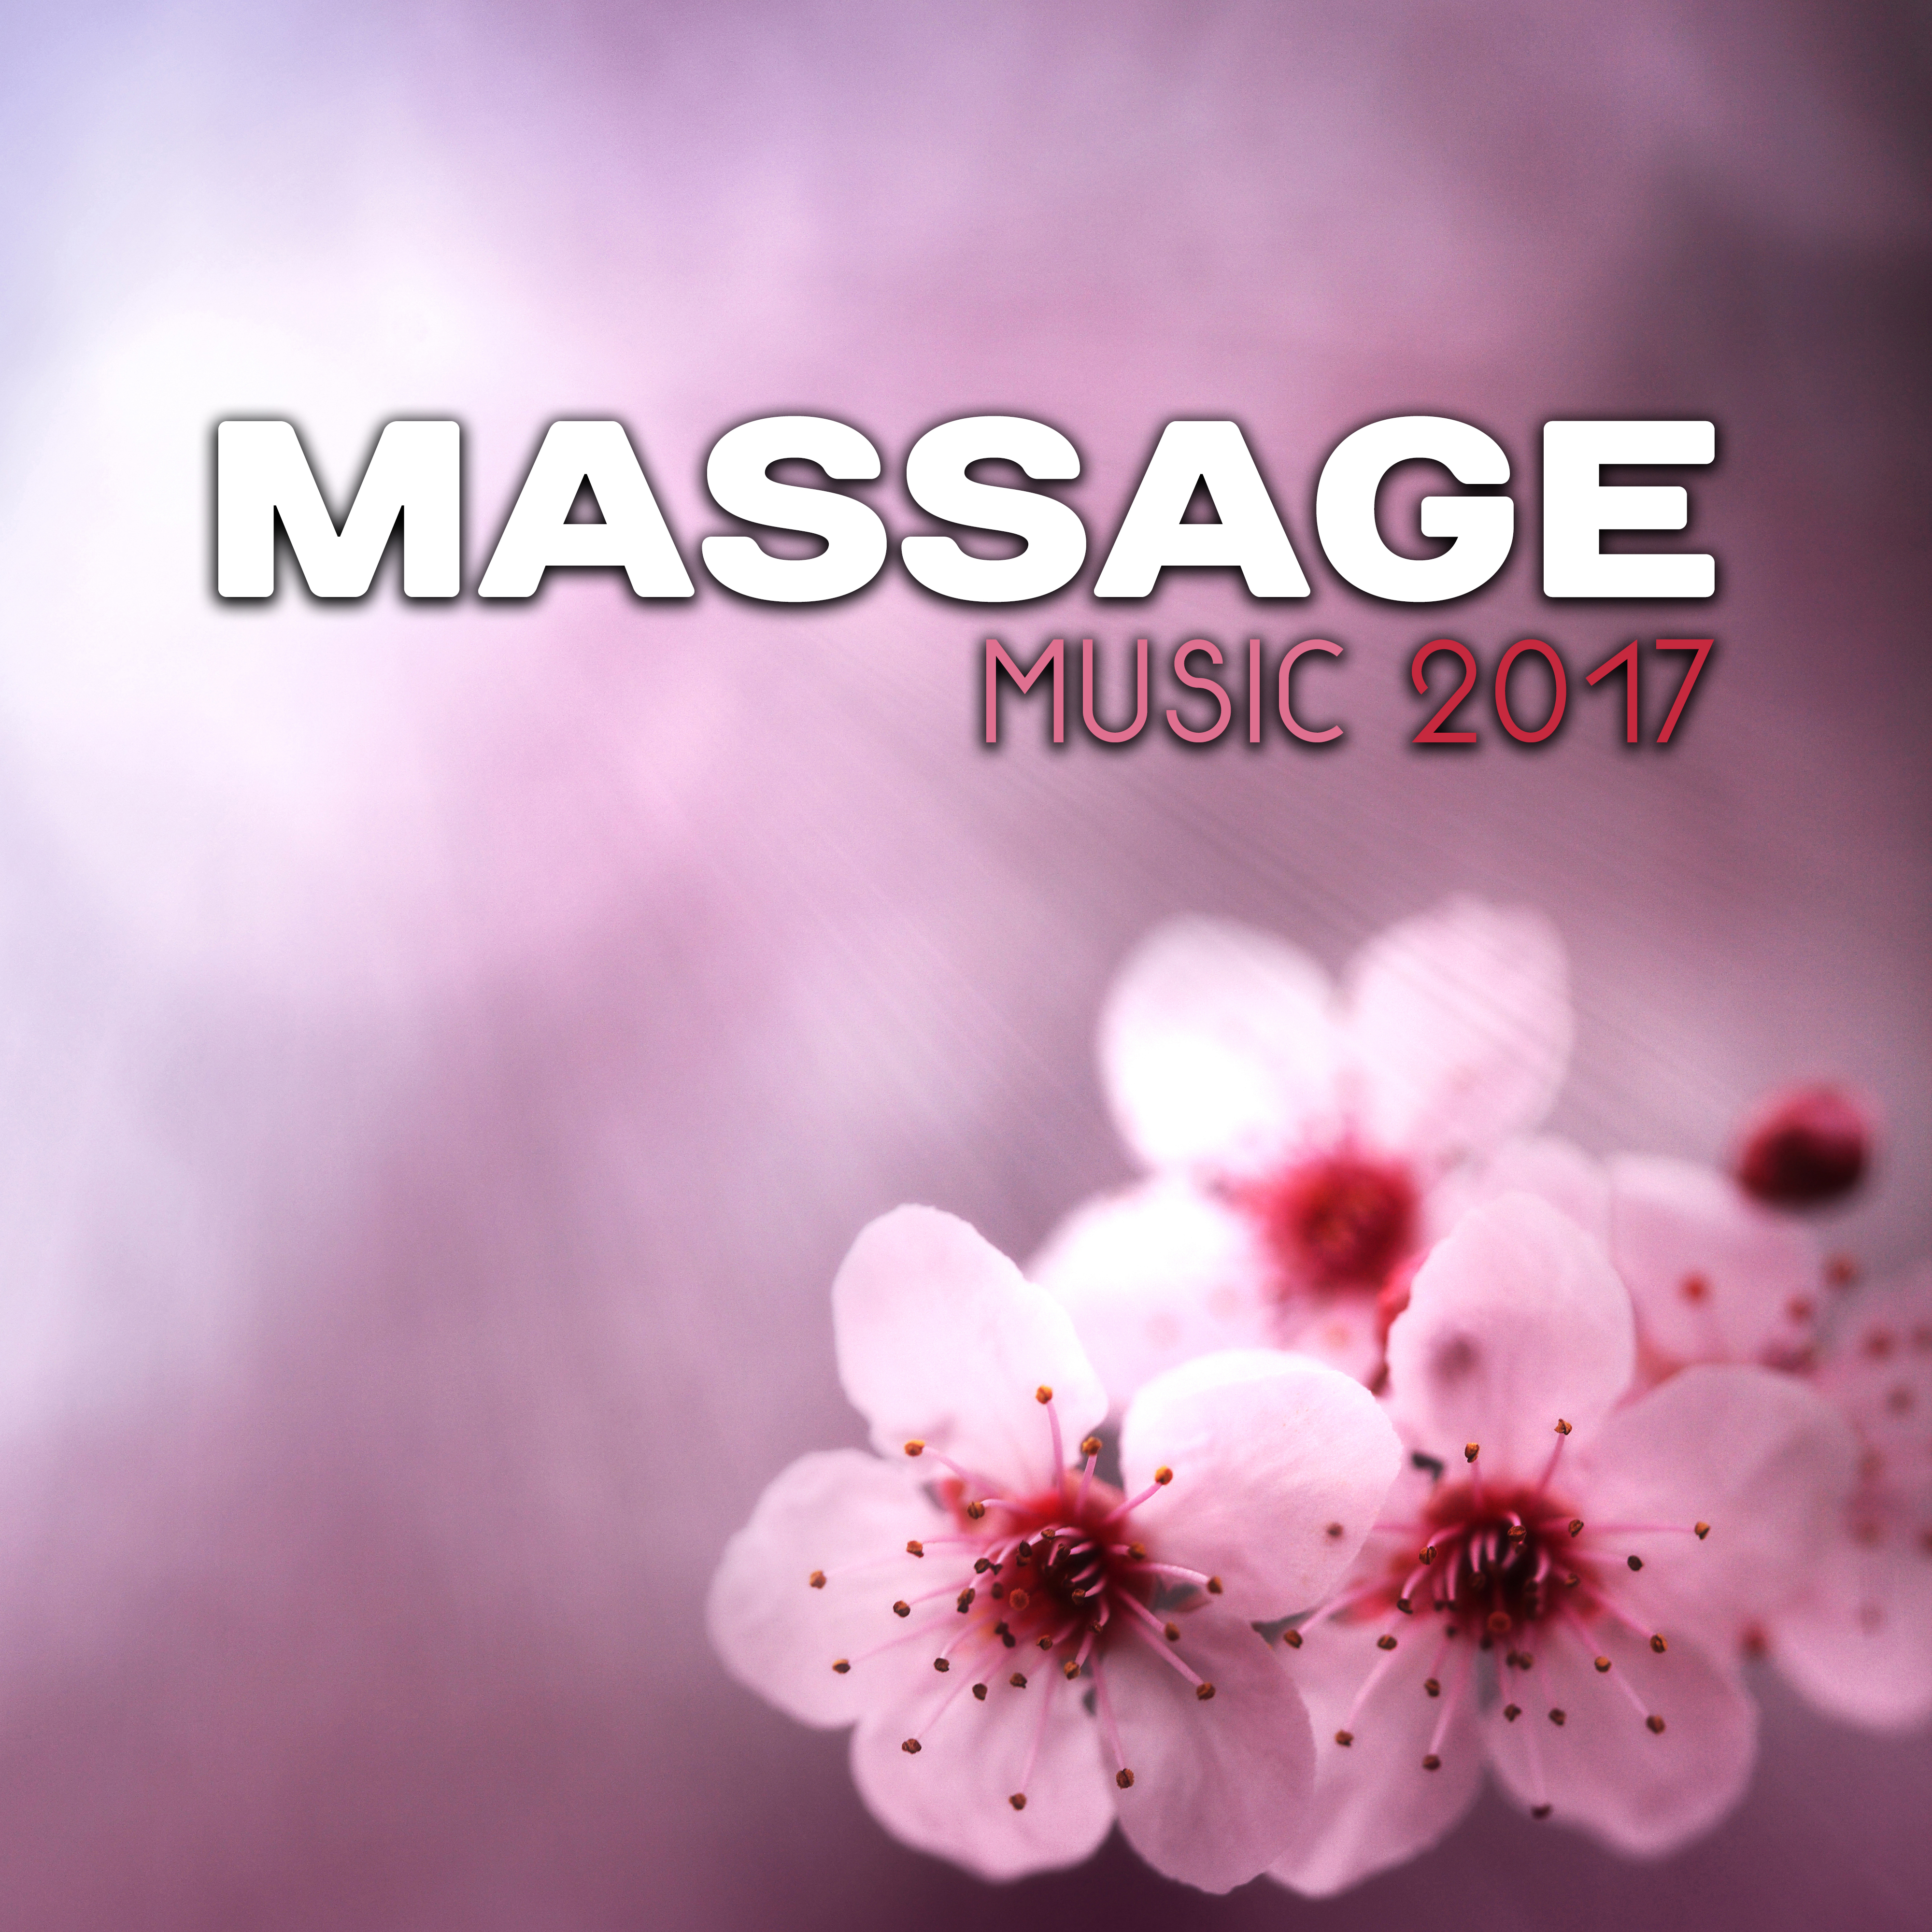 Massage Music 2017  Spa Relaxation, Massage Music, Deep Nature Sounds, Wellness, Healing Bliss